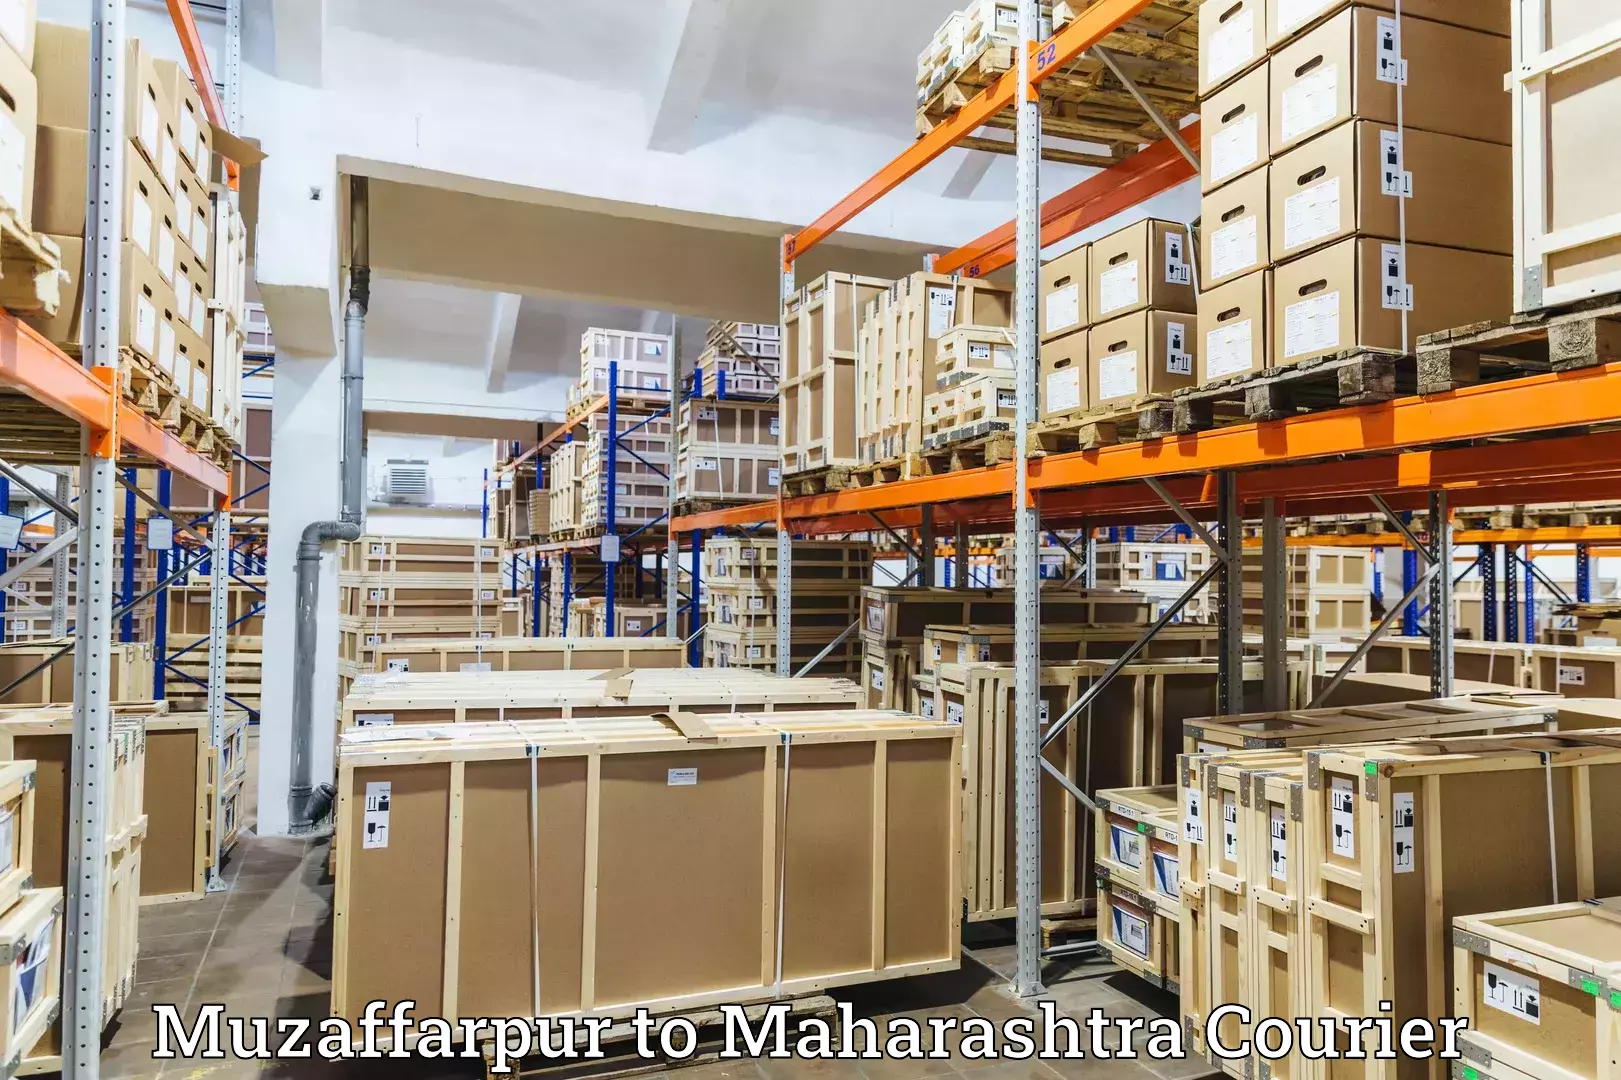 Overnight delivery services Muzaffarpur to Maharashtra